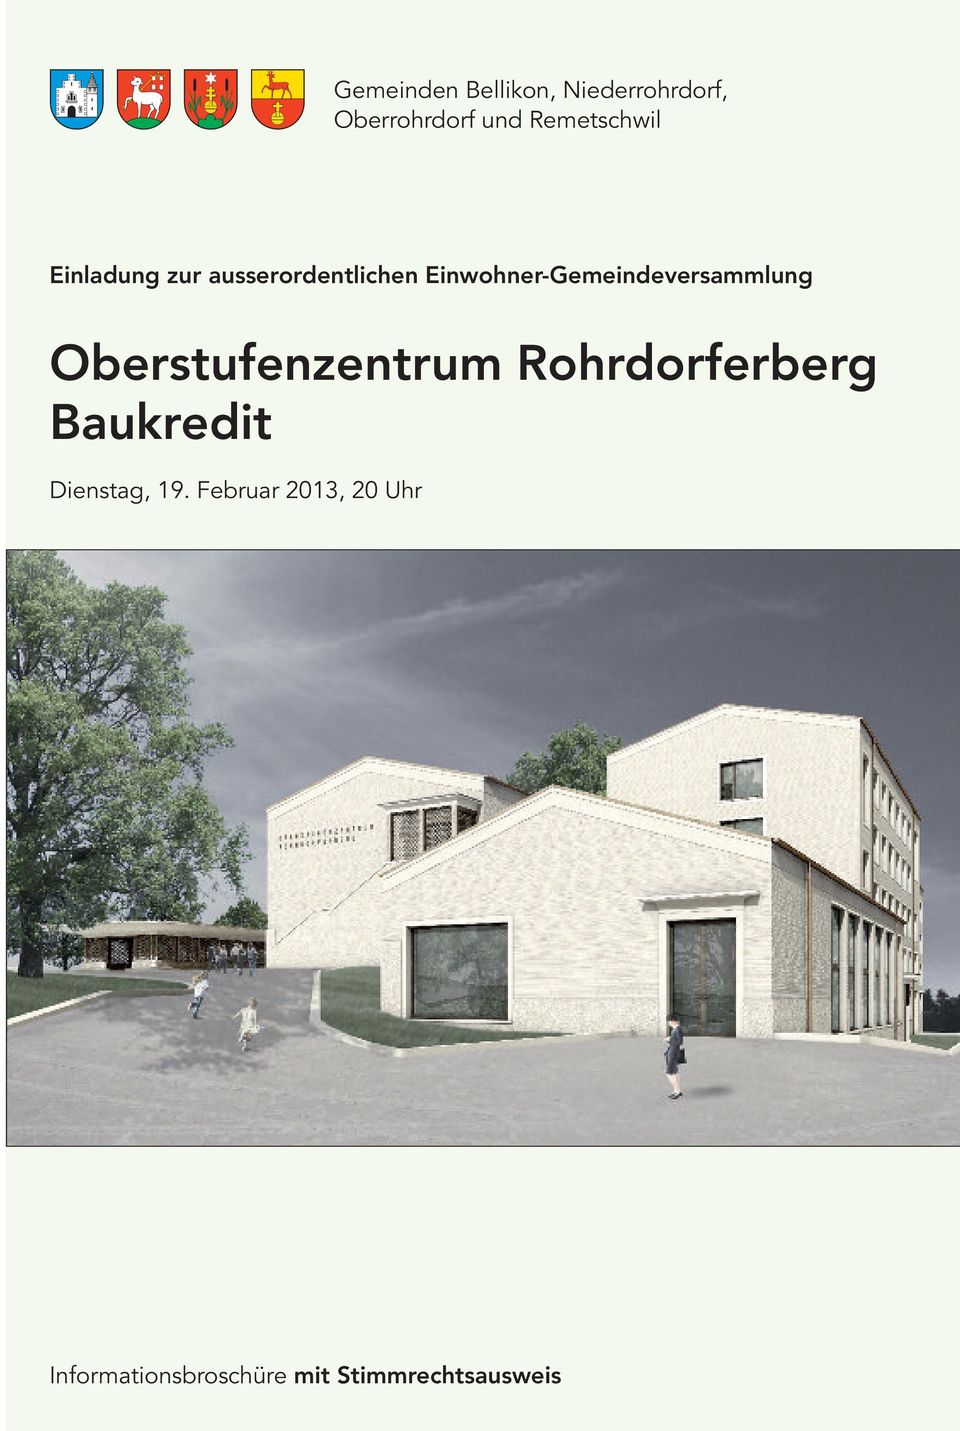 Einwohner-Gemeindeversammlung Oberstufenzentrum Rohrdorferberg